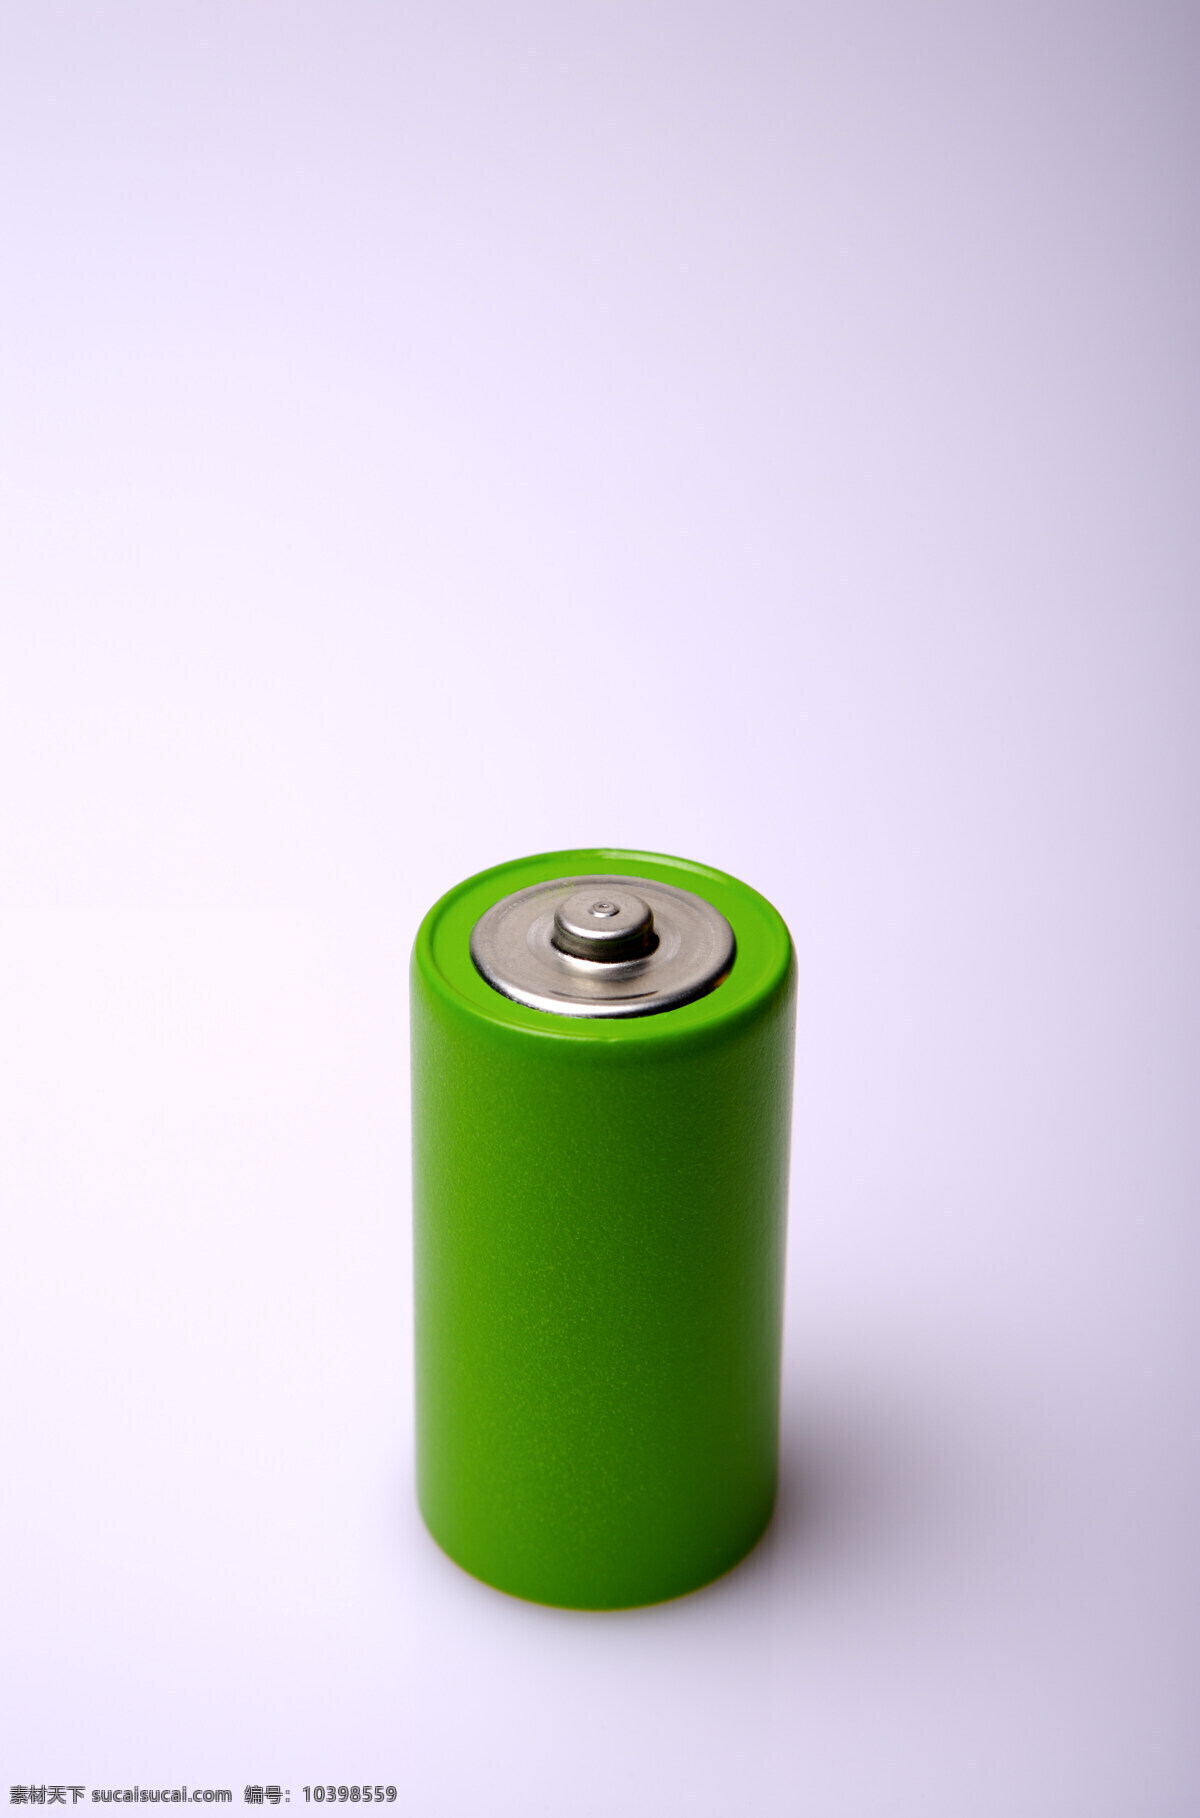 环保 电池 特写 垃圾 公益广告 回收利用 可利用资源 高清图片 其他类别 生活百科